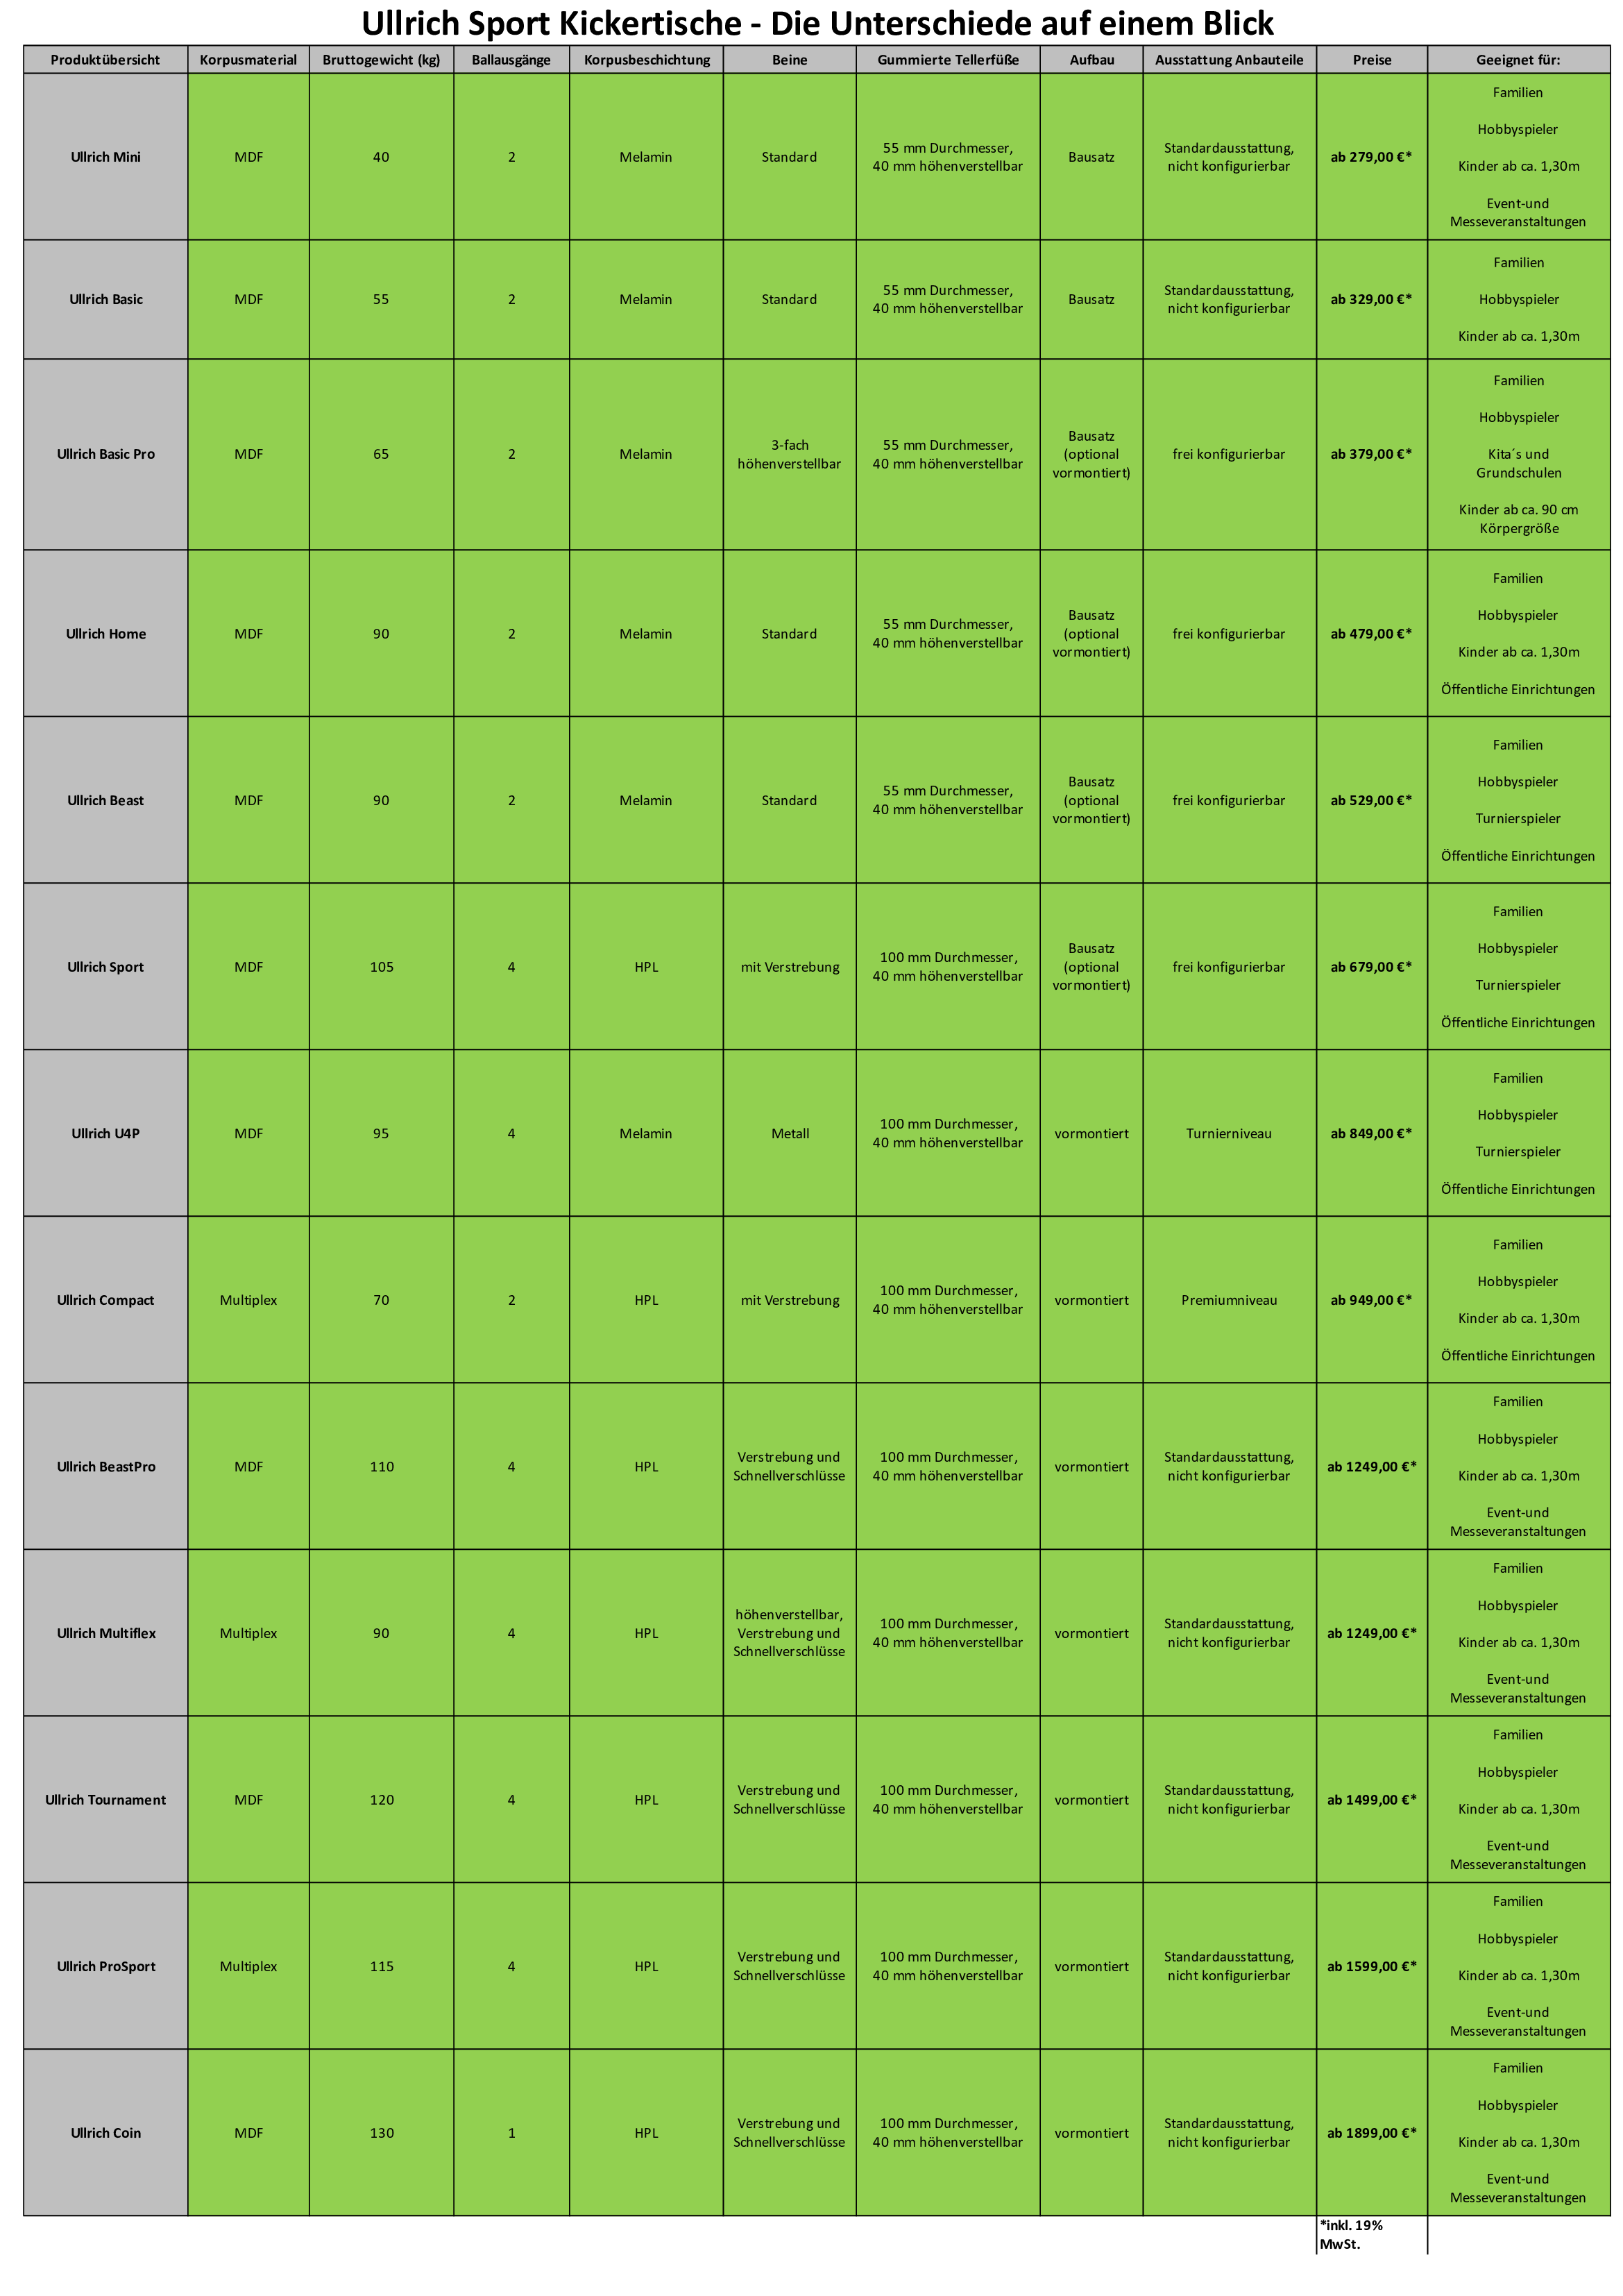 Vergleich der Ullrich-Sport Tische